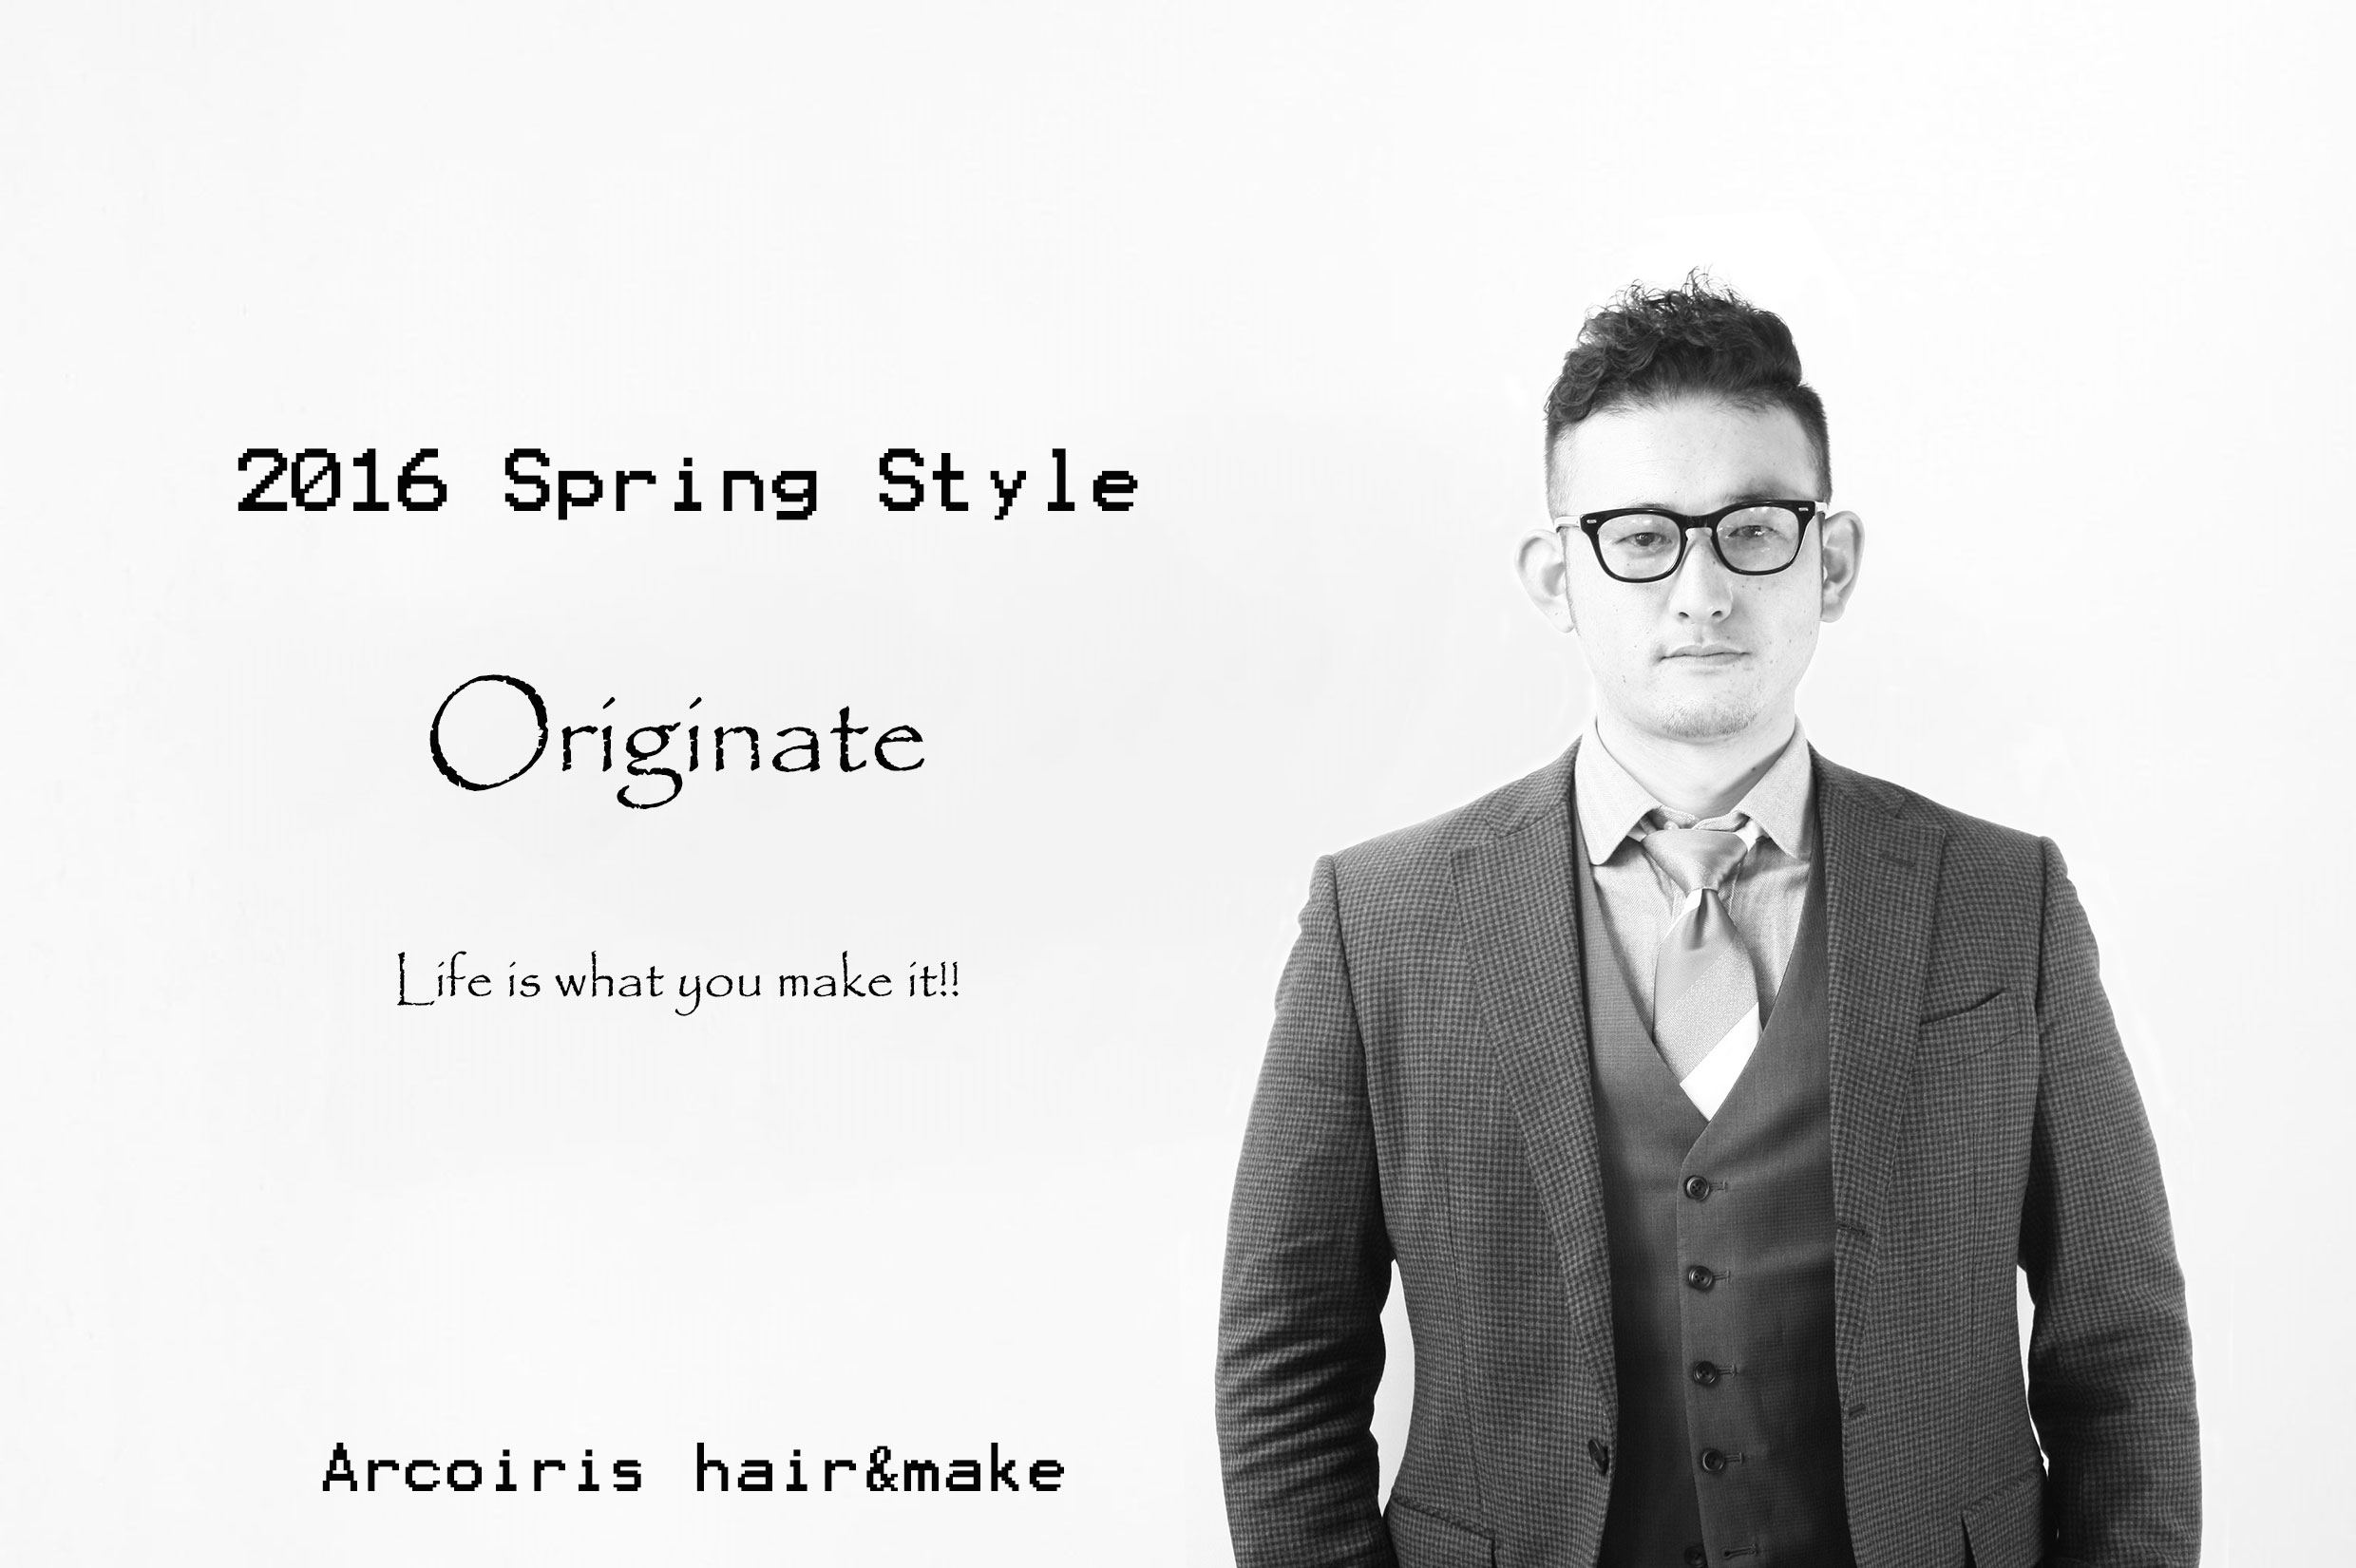 2016 Spring Style “Originate”